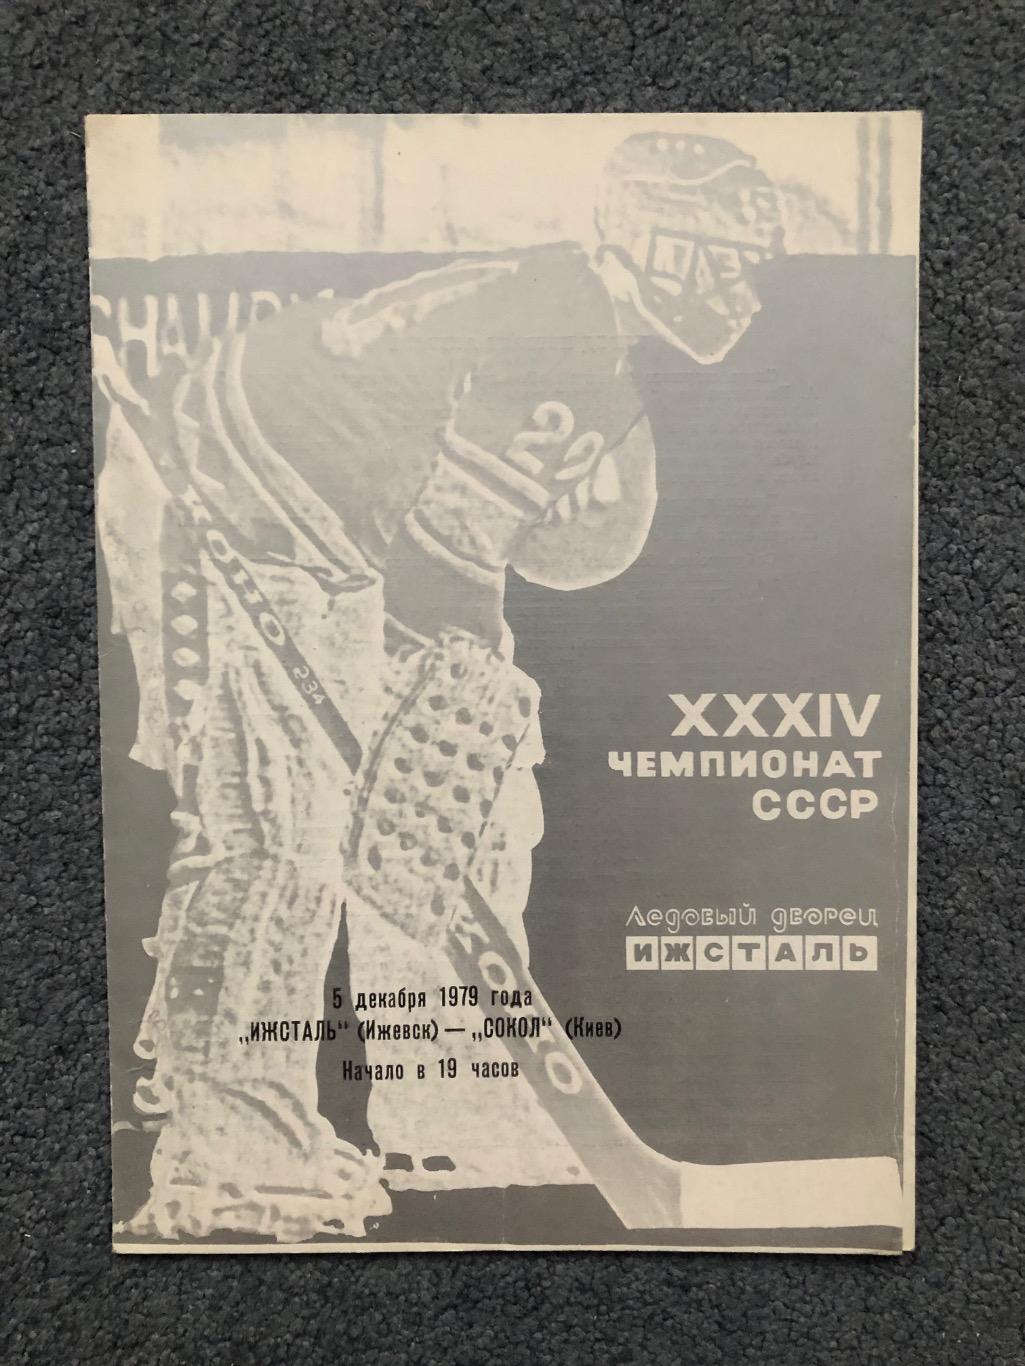 Ижсталь Ижевск - Сокол Киев, 05.12.1979